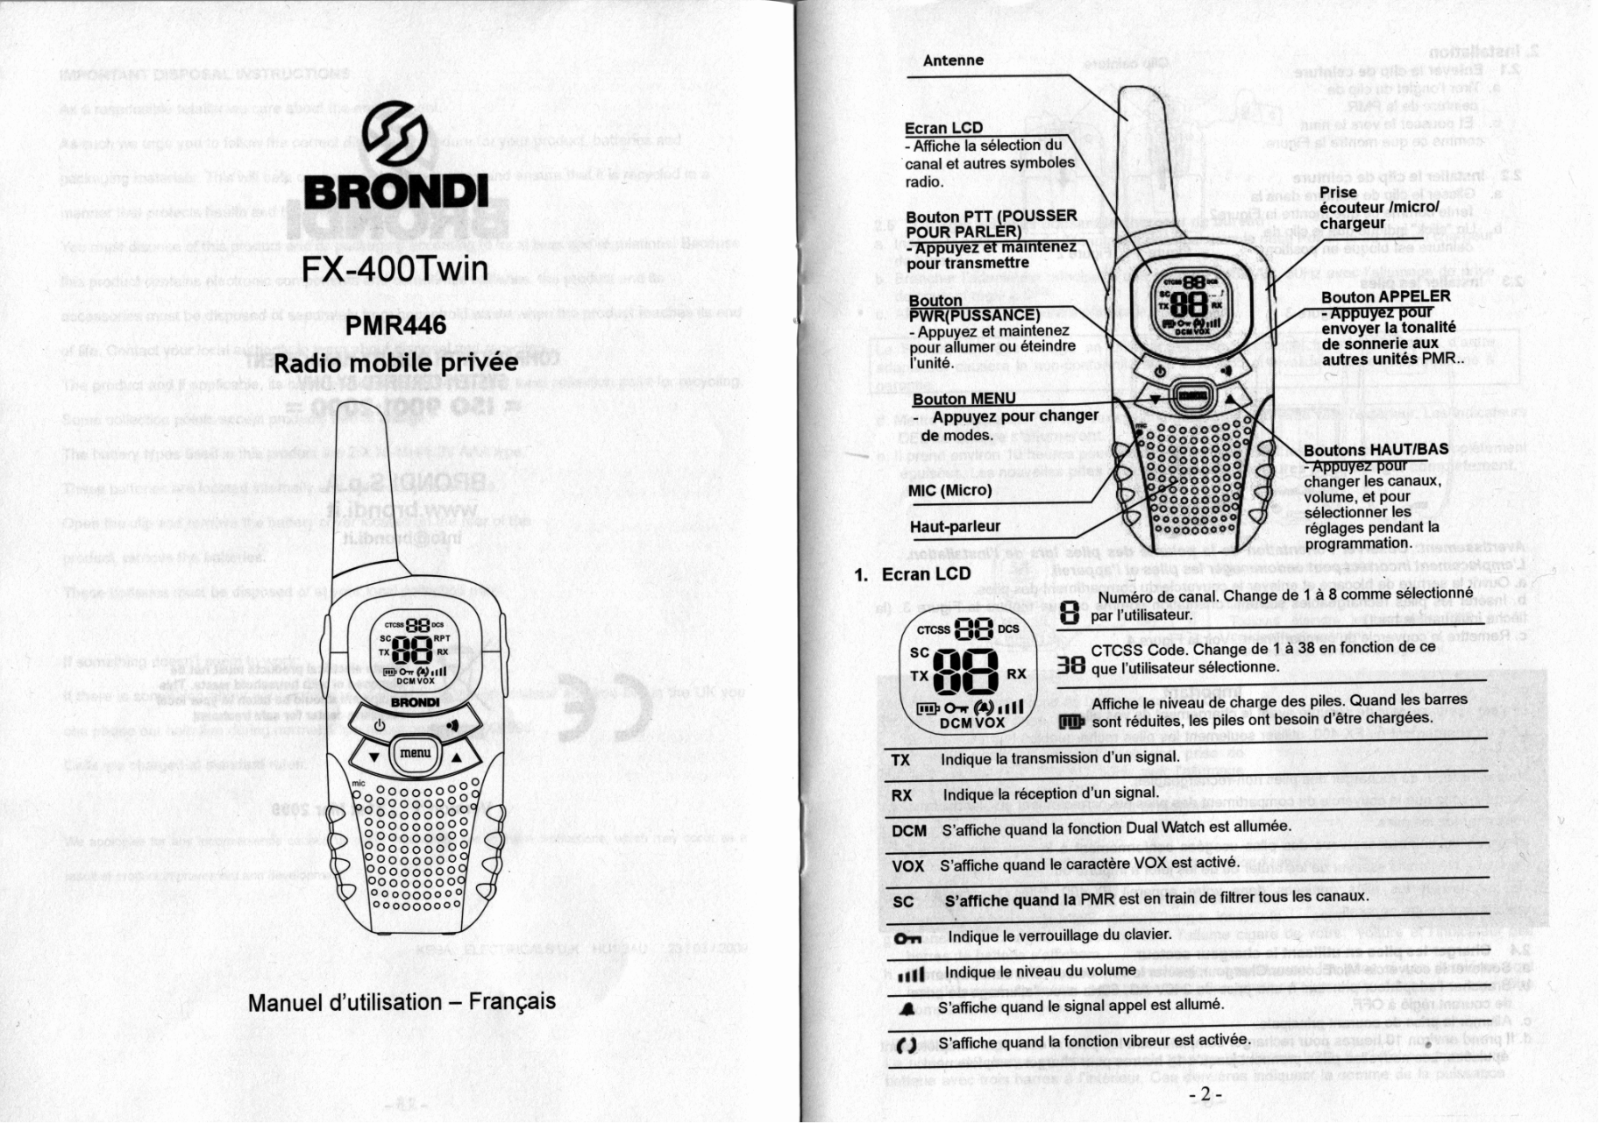 BRONDI FX-400TWIN, PMR446 User Manual